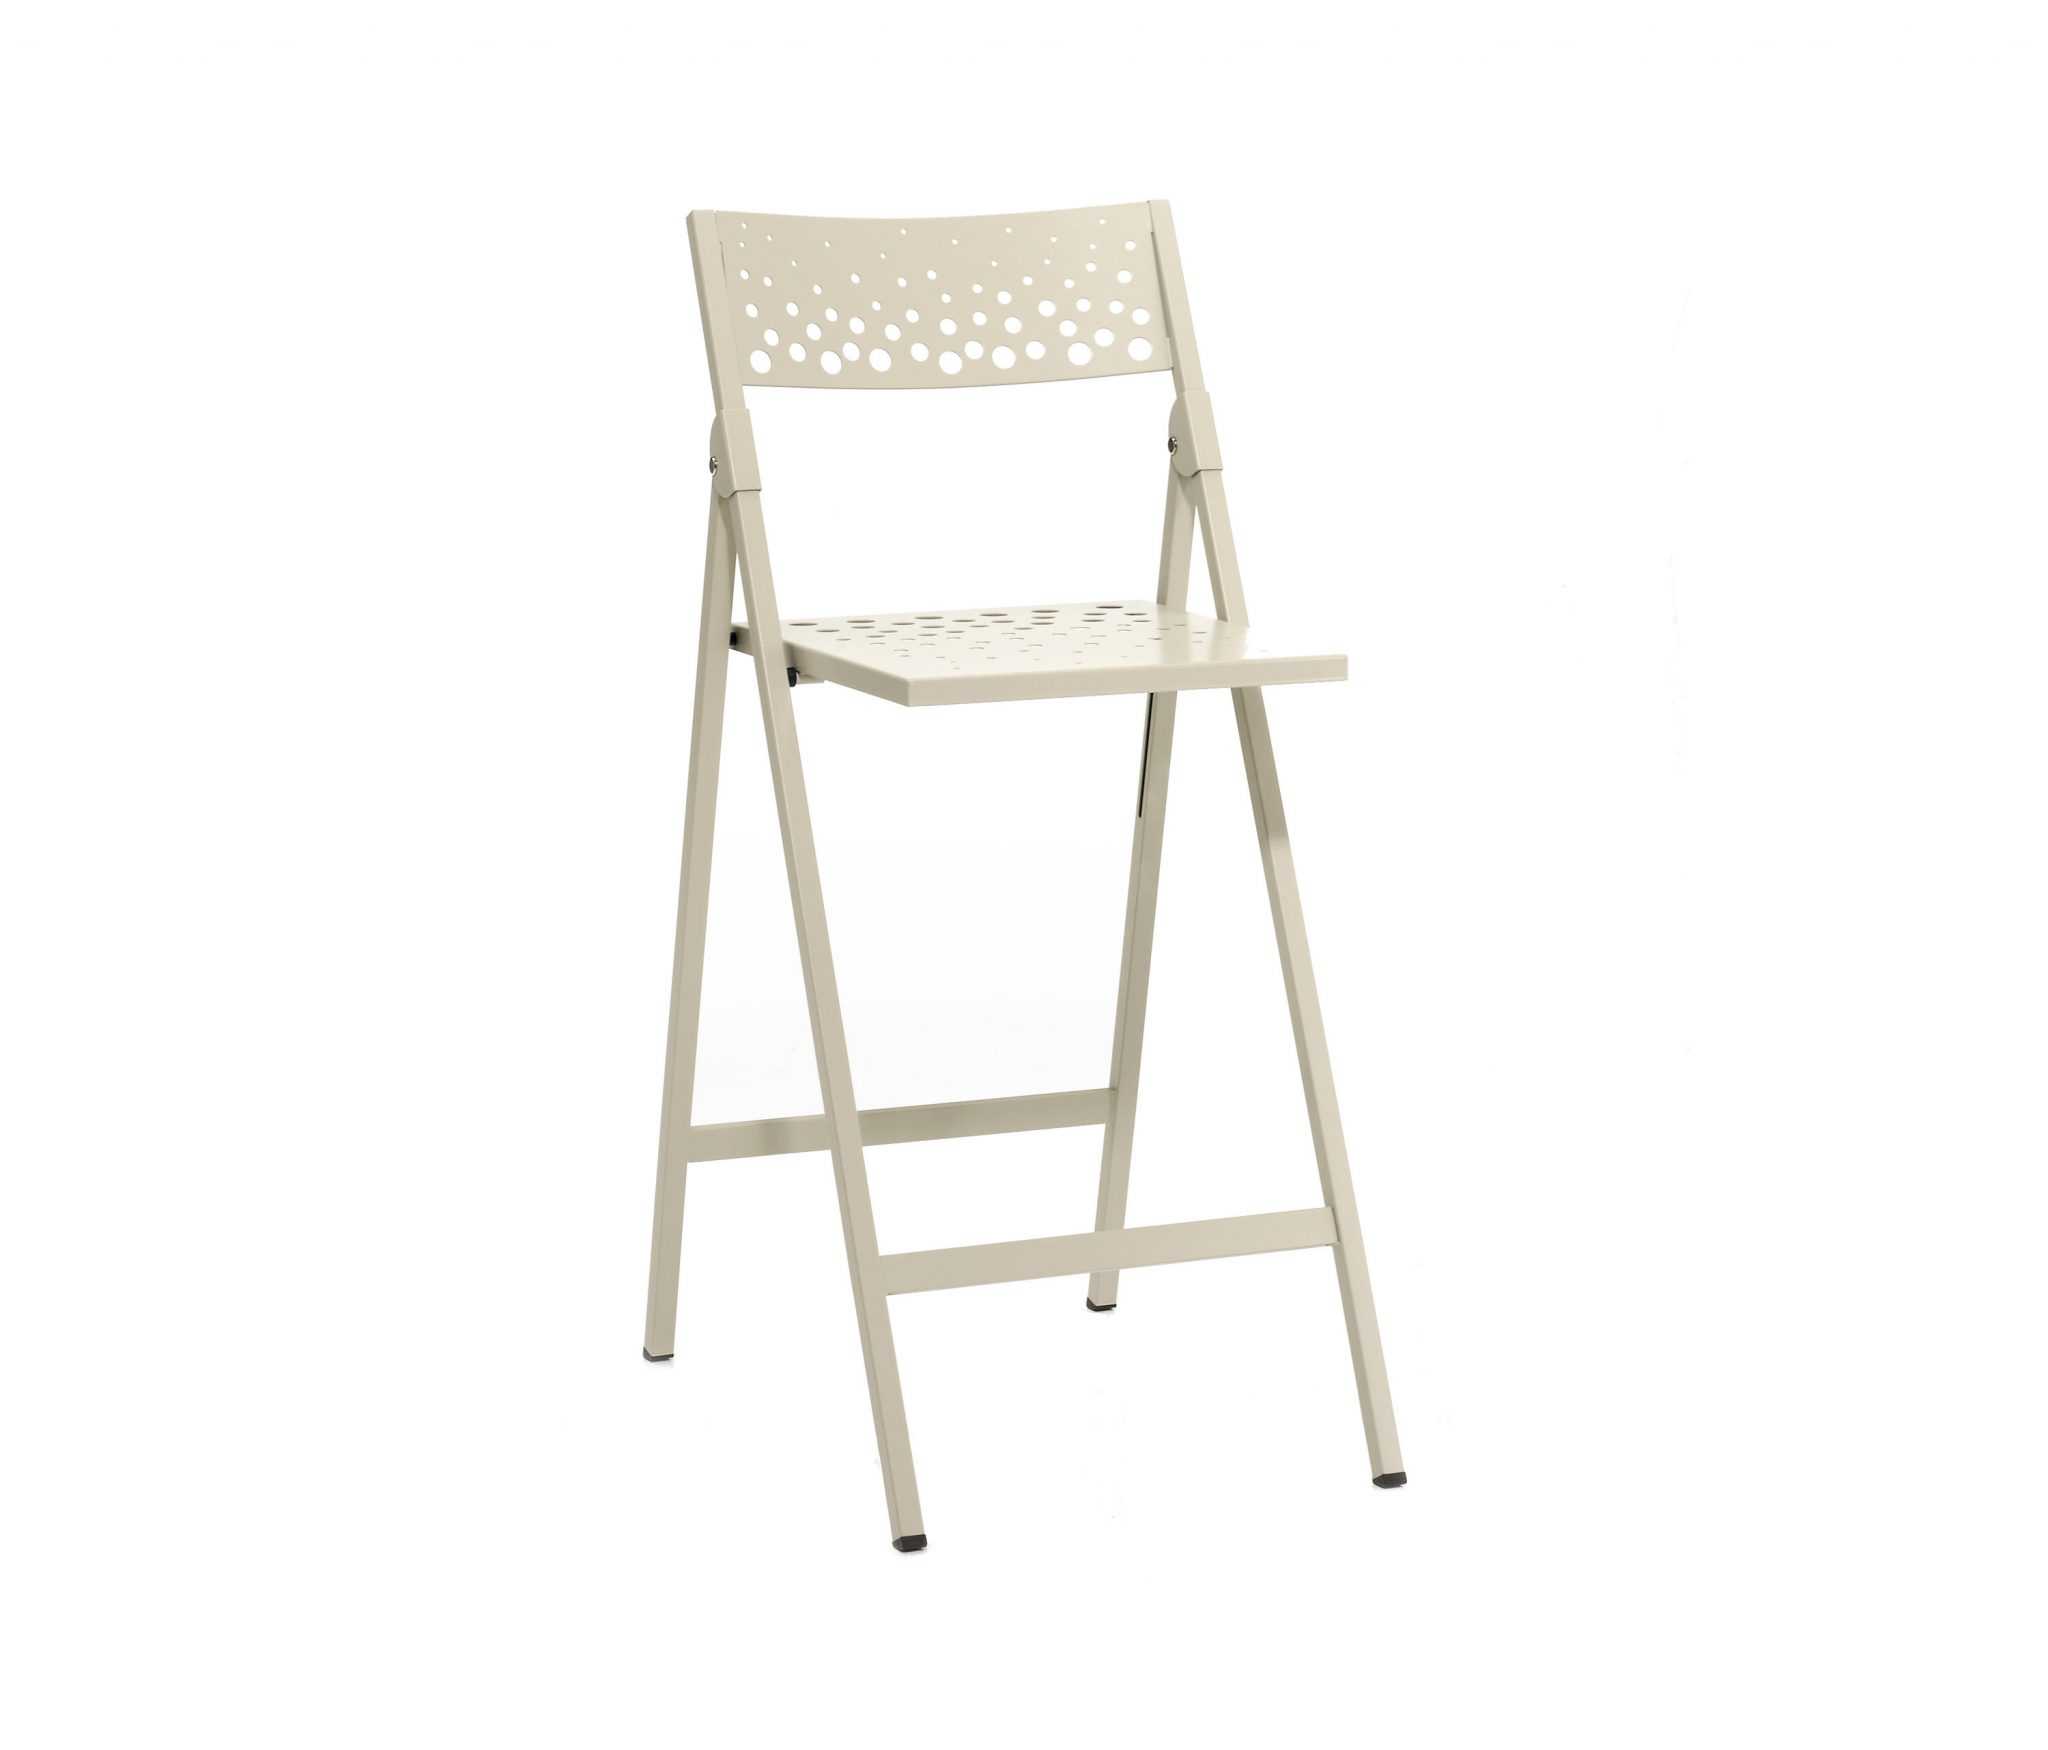 Высота барного стула: стандарт, как подобрать высоту барного стула, как сделать стул своими руками